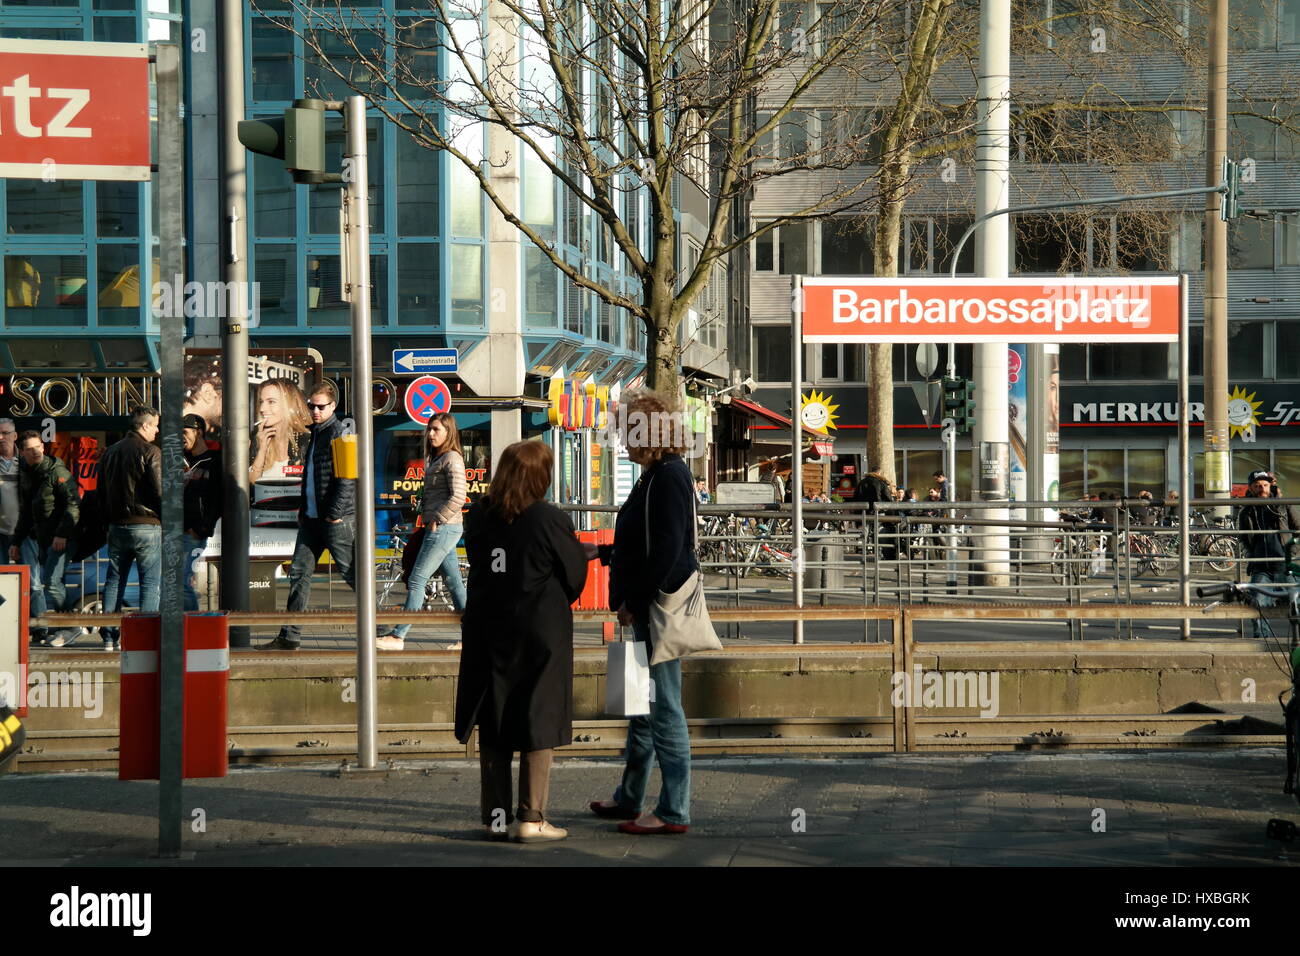 Barbarossaplatz in Köln (Cologne), Nordrhein-Westfalen, Deutschland Stock Photo